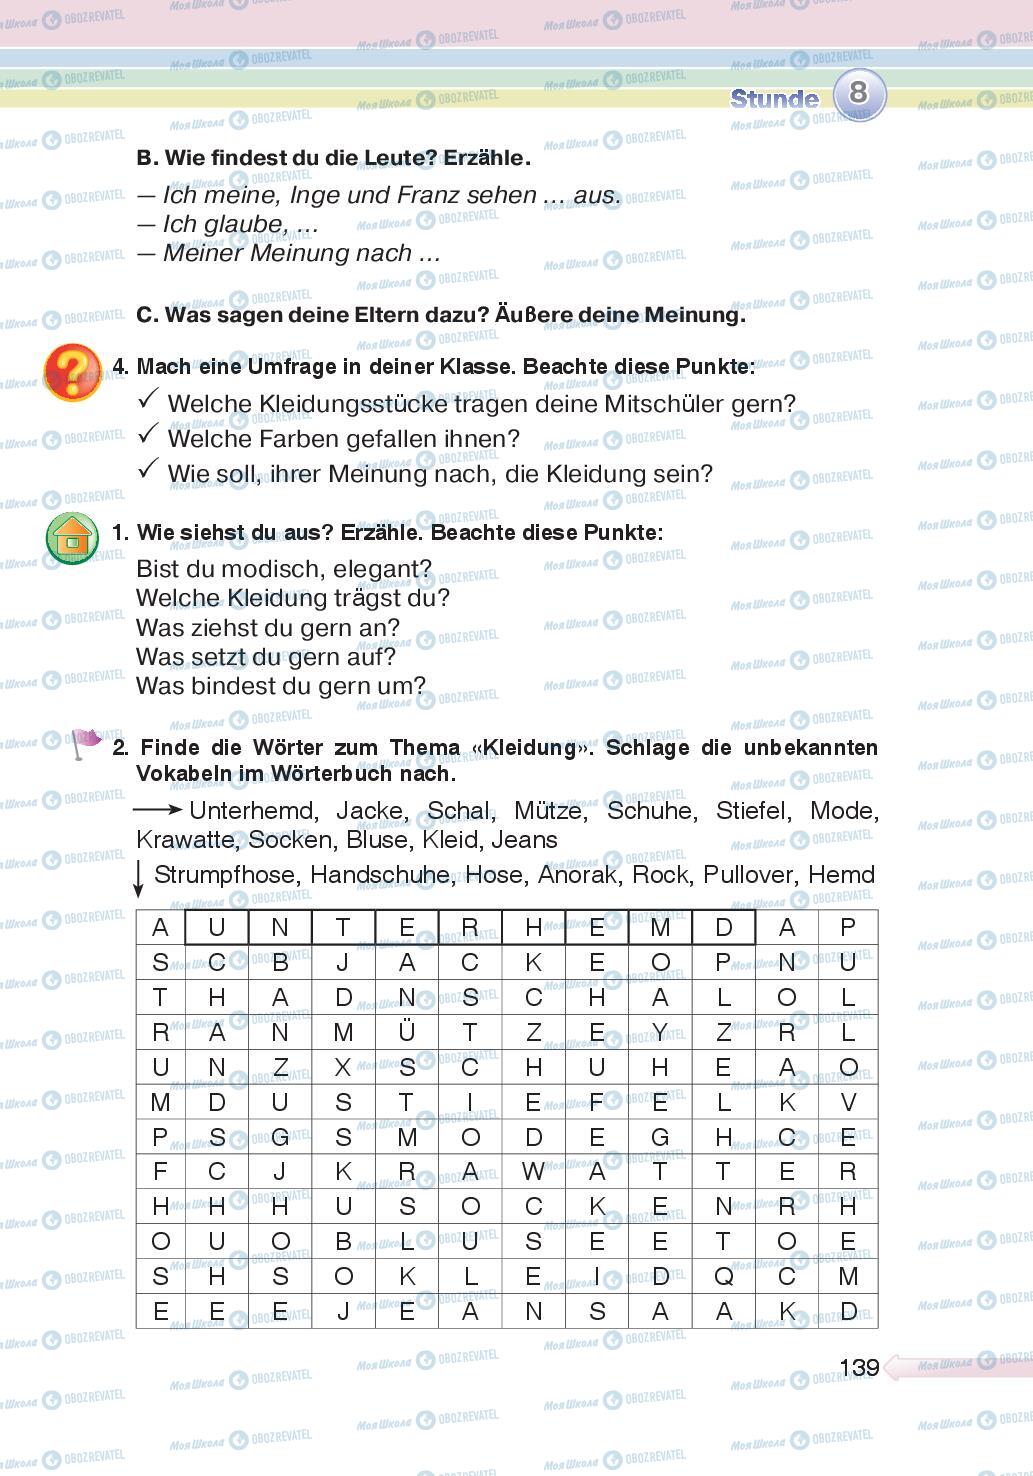 Підручники Німецька мова 5 клас сторінка 139